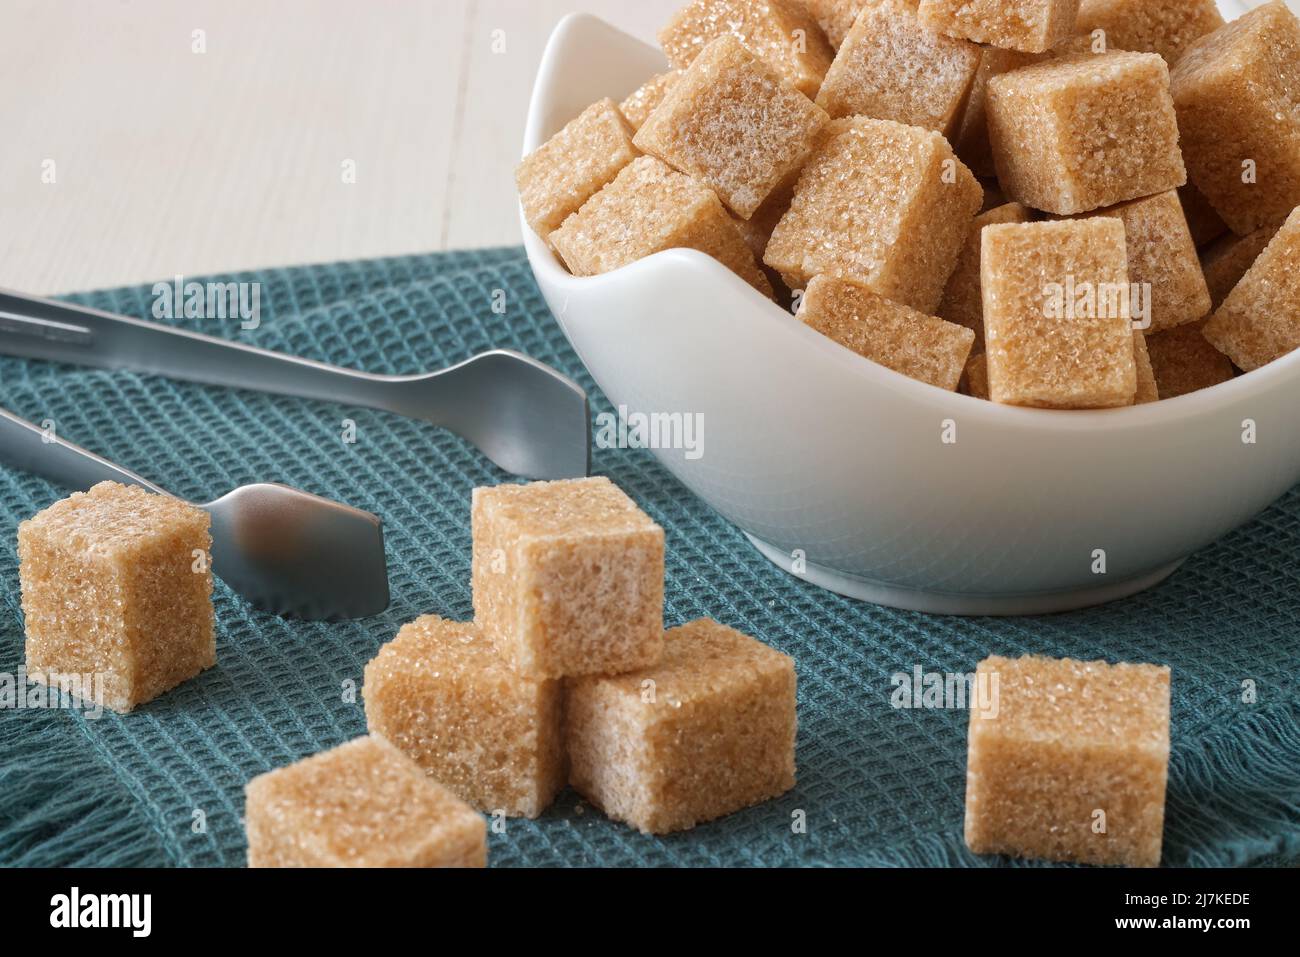 Zucchero di canna a forma di cubo in ciotola di porcellana su un tovagliolo turchese con pinze di zucchero d'argento. Primo piano, nessuna persona. Foto Stock